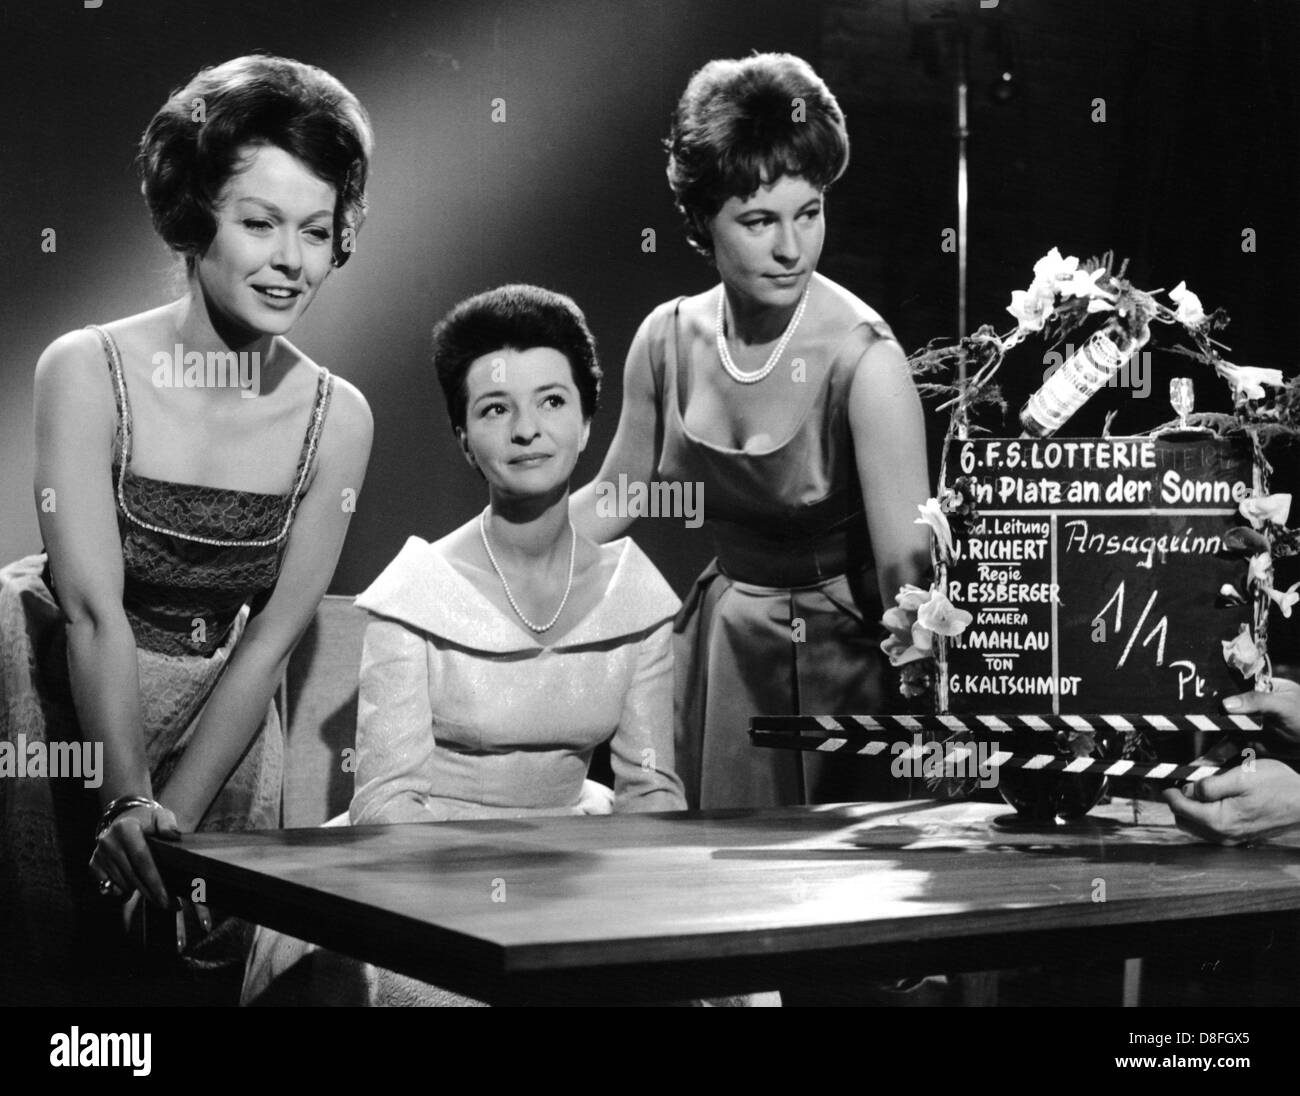 Les trois présentateurs TV (l-r) Ursula von Manescul, Irene Koss et Dagmar Bergmeister en studio à Hambourg, où ils seront en chantant dans un film. Photo du 24 avril en 1961. Banque D'Images